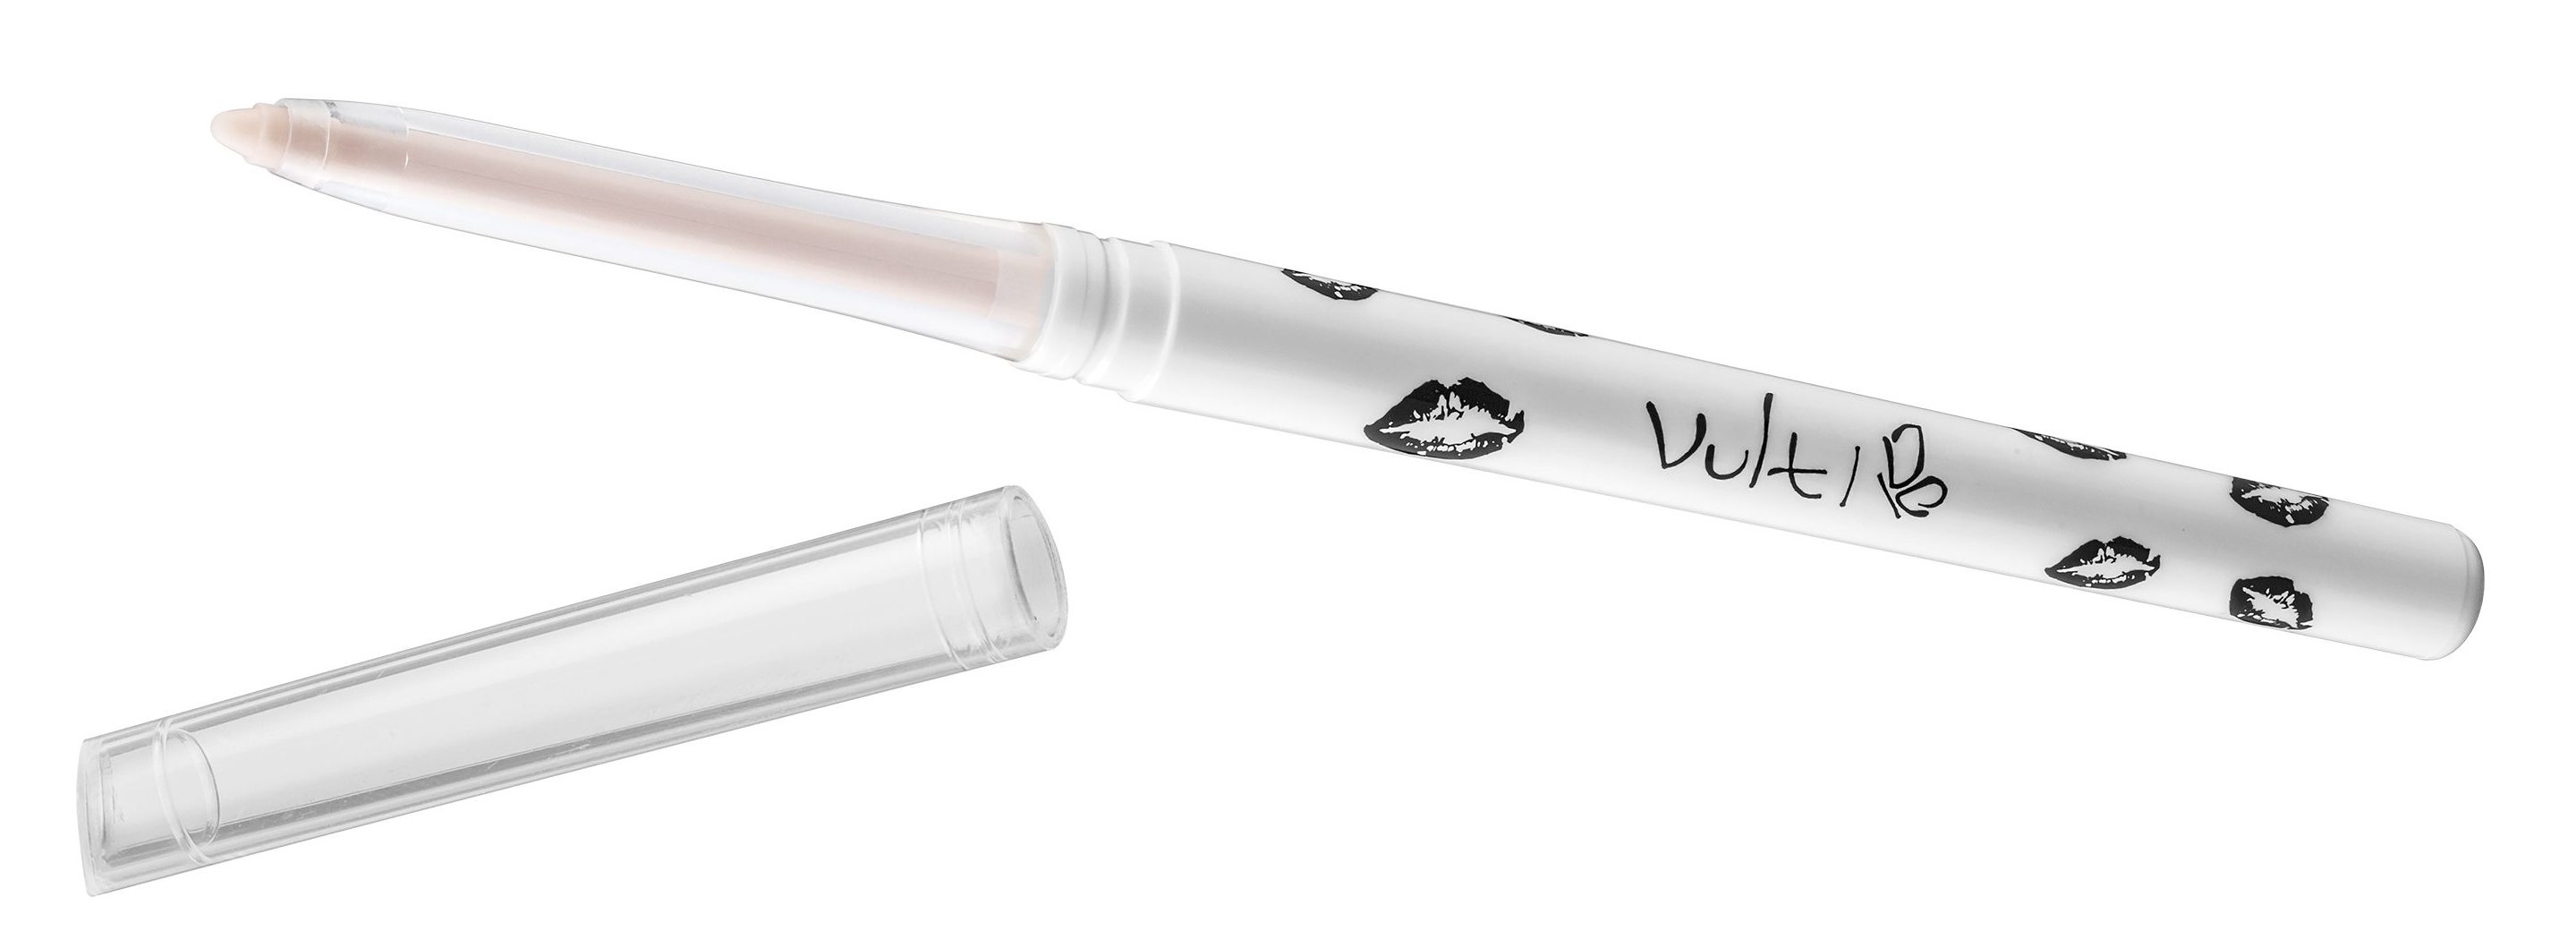 Vult apresenta super lançamento de linha de batons e lapiseira incolor